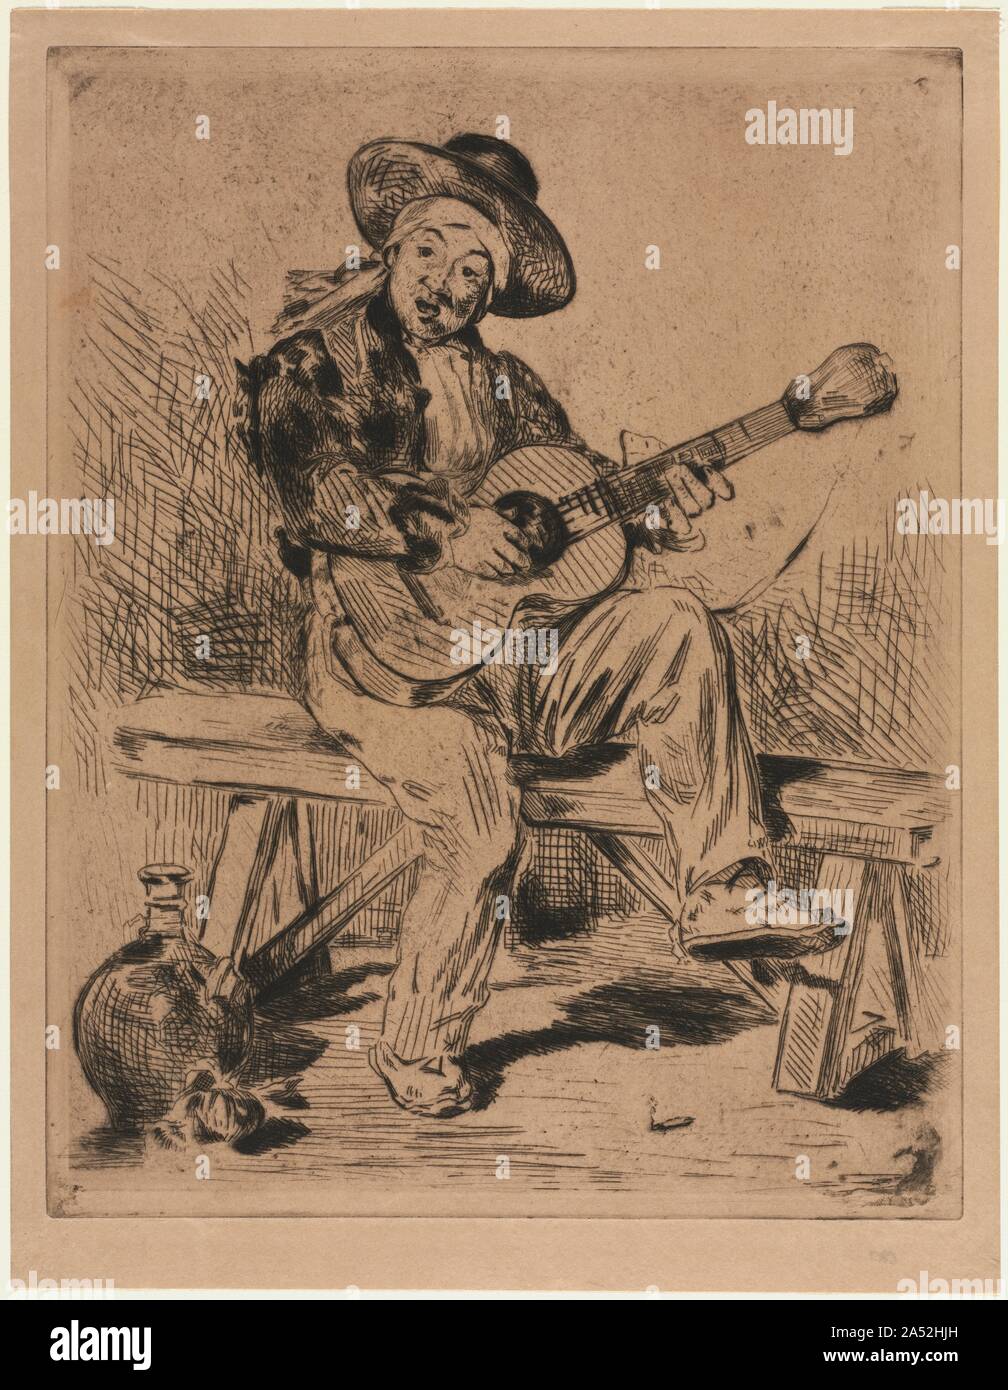 Le guitariste, 1861. Manet&# x2019;s la peinture du chanteur espagnol a remporté un succès critique et populaire quand il a été exposé à Paris au salon annuel de 1860. L'artiste capitalisé sur la reconnaissance de la peinture et a produit une version gravée de la composition de l'année suivante qui s'est révélé tout aussi fructueuse. Manet&# x2019;s sujet a été inspiré par Jaime Bosch, un guitariste virtuose qui était très populaire à Paris au milieu du xixe siècle. Le guitariste catalan ont pris part à l'encore de soir&# xe9;es organisé par Madame Manet, l'artiste&# x2019;s mère, à son domicile à Paris. Banque D'Images